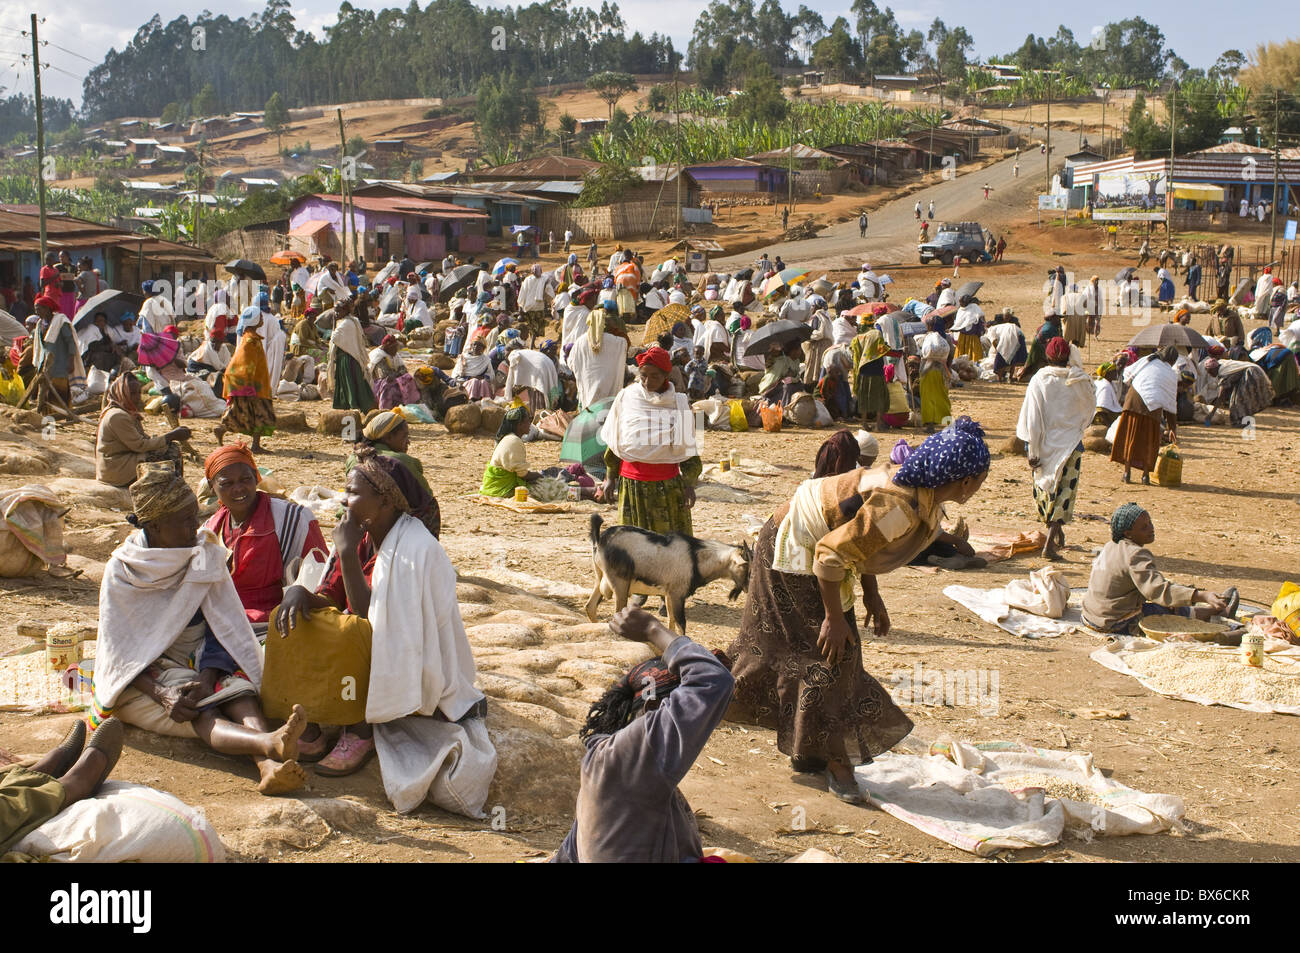 Marché local dans la région de tribu Dorze, Ethiopie, Afrique Banque D'Images